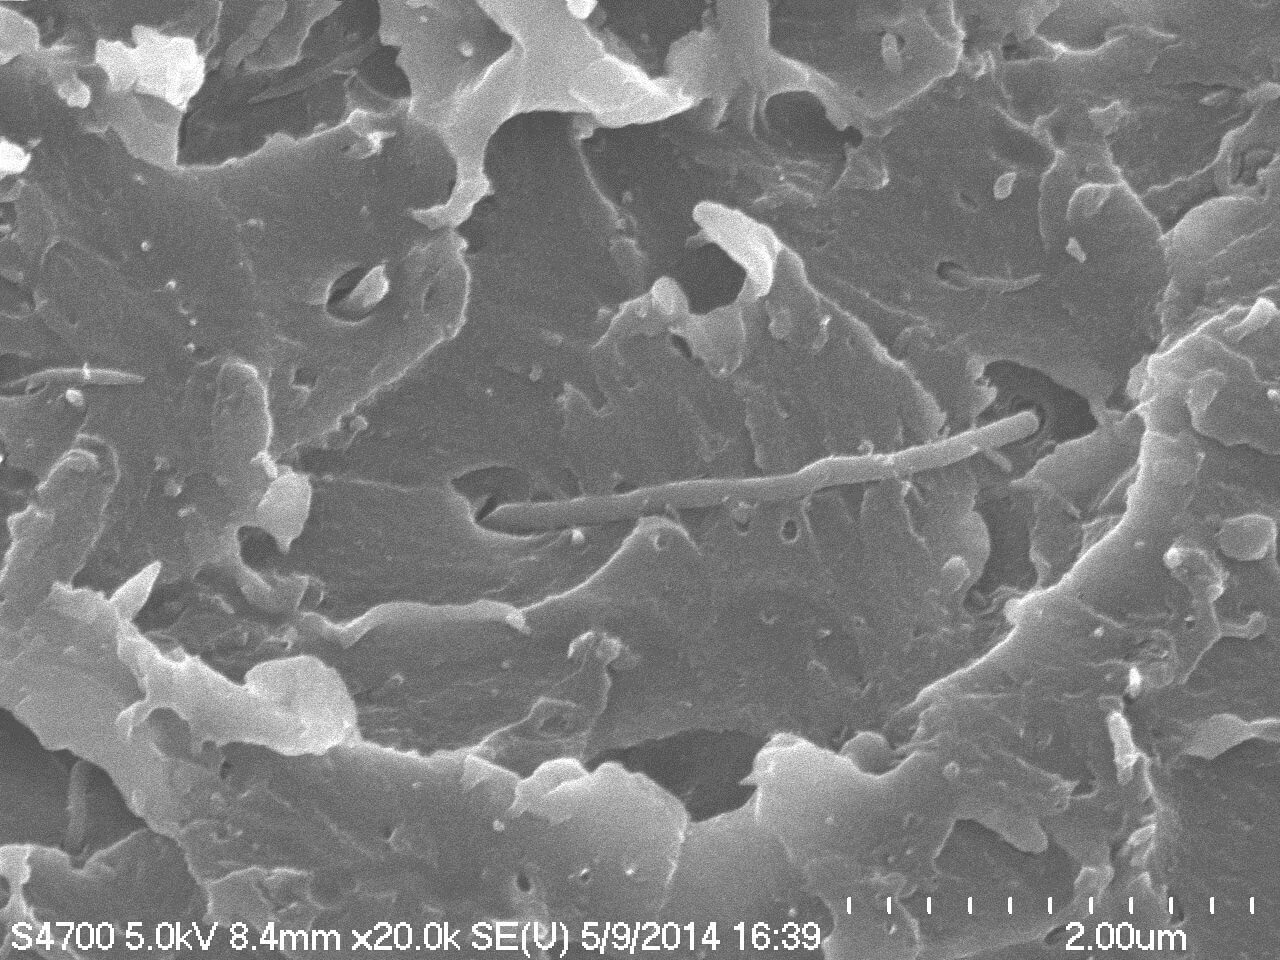 : صورة المادة البوليمرية الجديدة المعززة بأنابيب الكربون النانوية، والتي يتم عرضها من خلال المجهر الإلكتروني الماسح (SEM). الرسم التوضيحي: آي بي إم